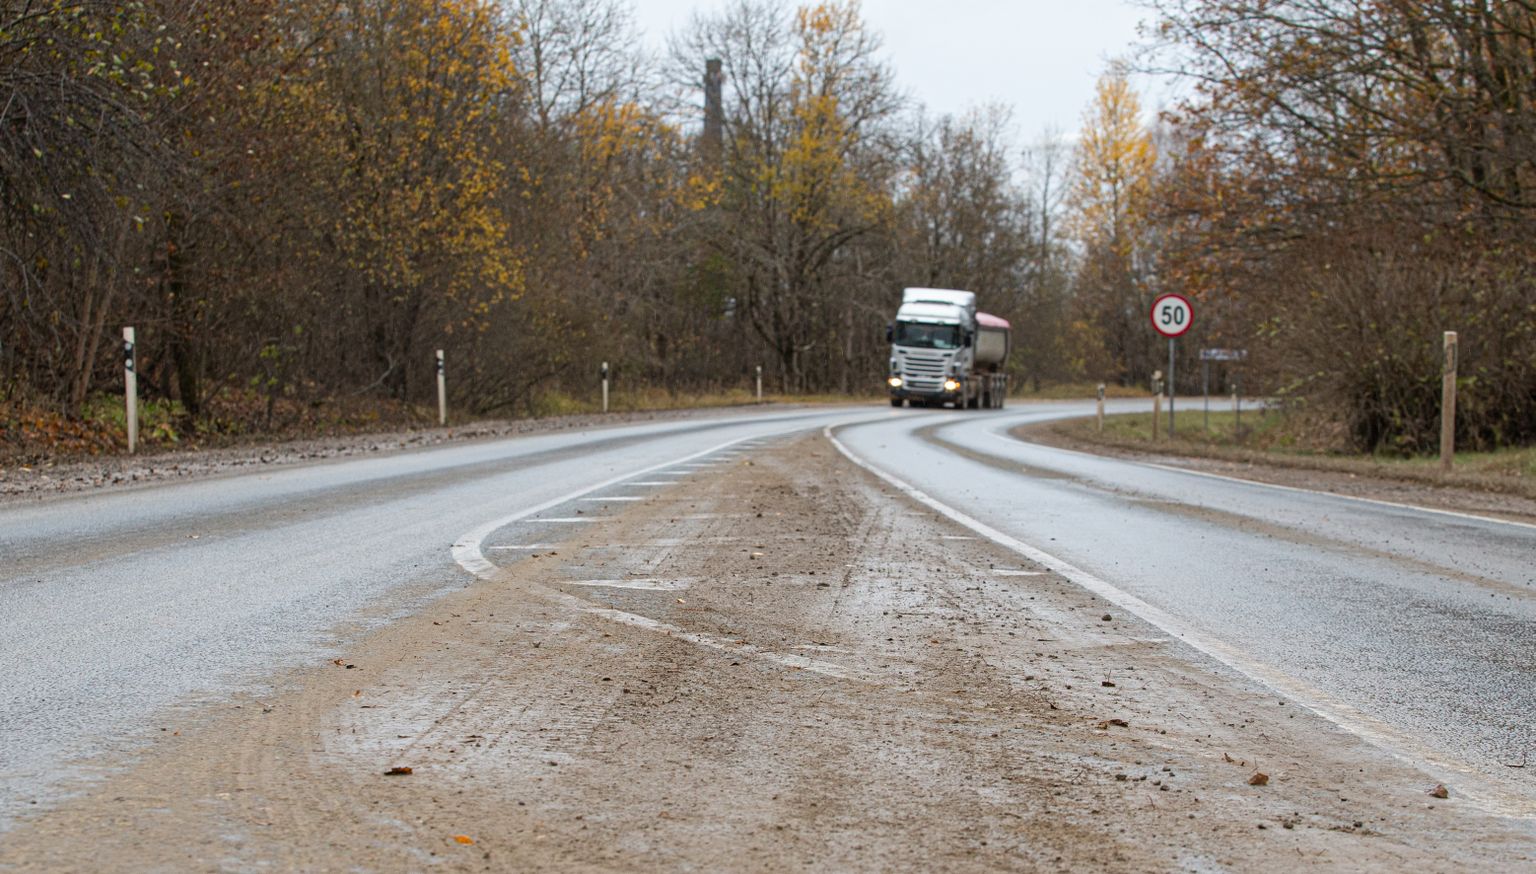 Karjäärist Narva poole suunduvad veokid jätavad maanteele saastaraja, mis olenevalt ilmast tolmu või porina Kiviõli linna kandub.